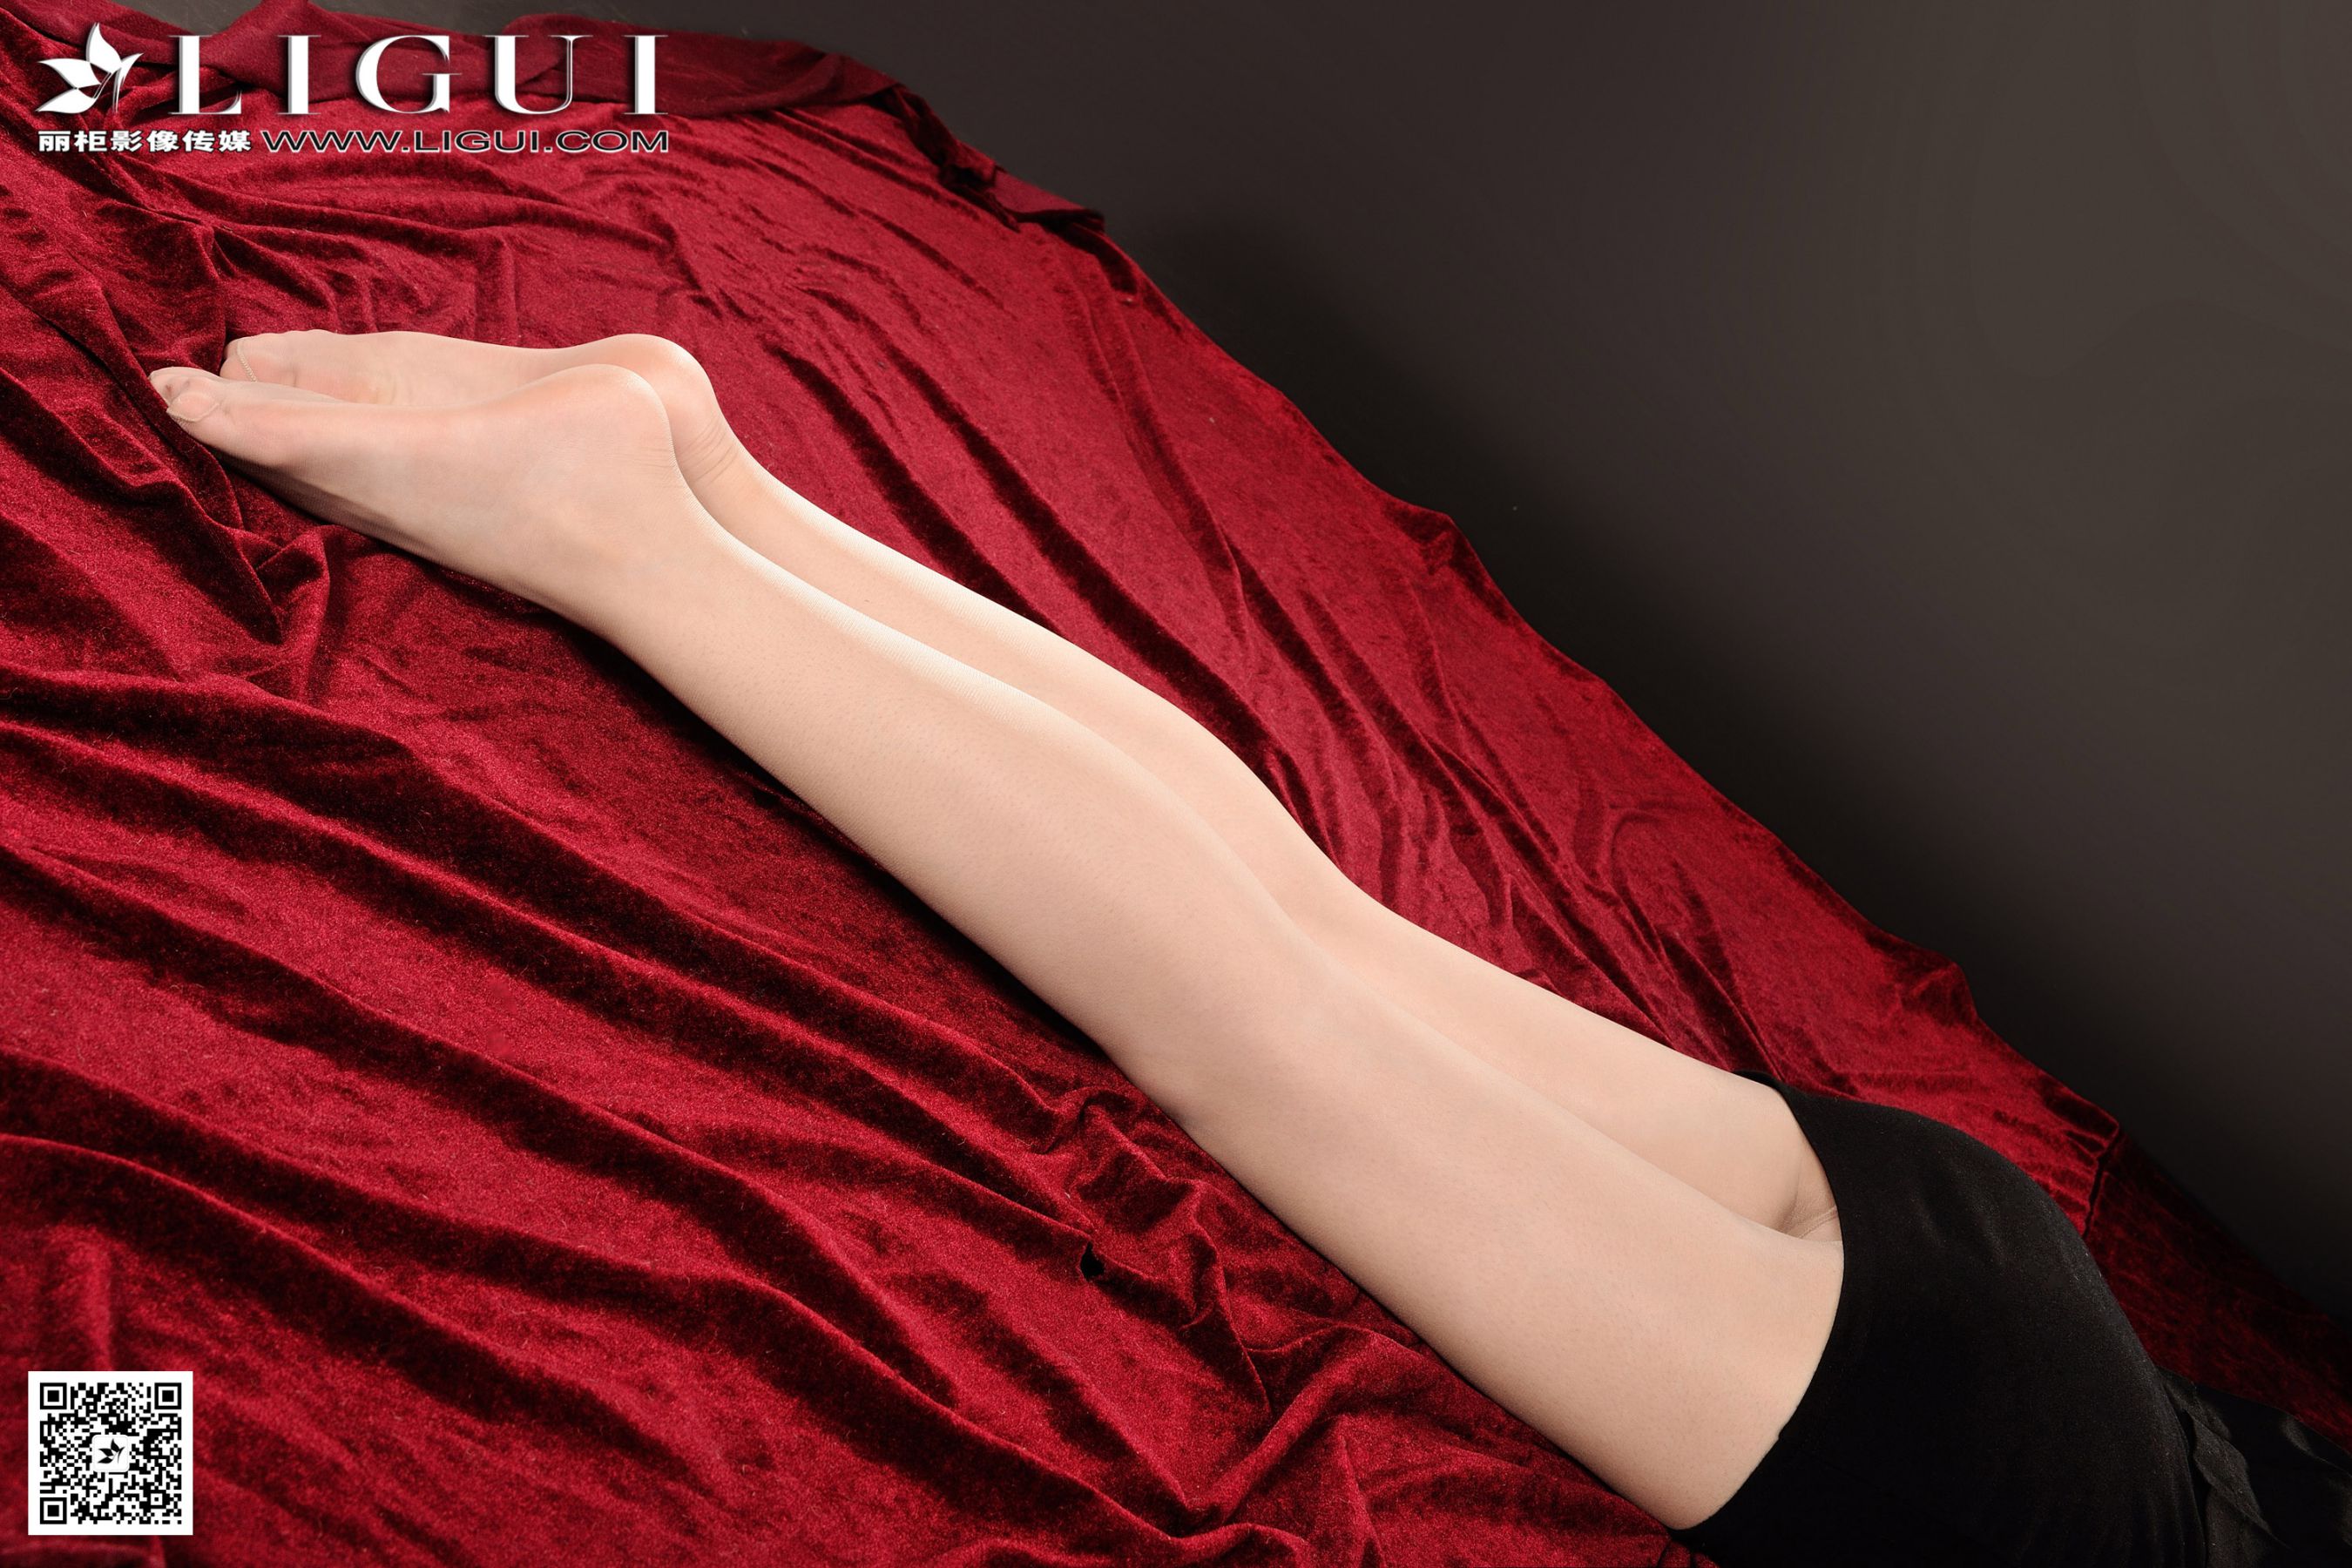 [丽柜贵足LiGui] Model Yoona's "OL Professional Wear Silk Foot High Heels" Full Collection of Beautiful Legs and Jade Feet Page 24 No.7b78d3